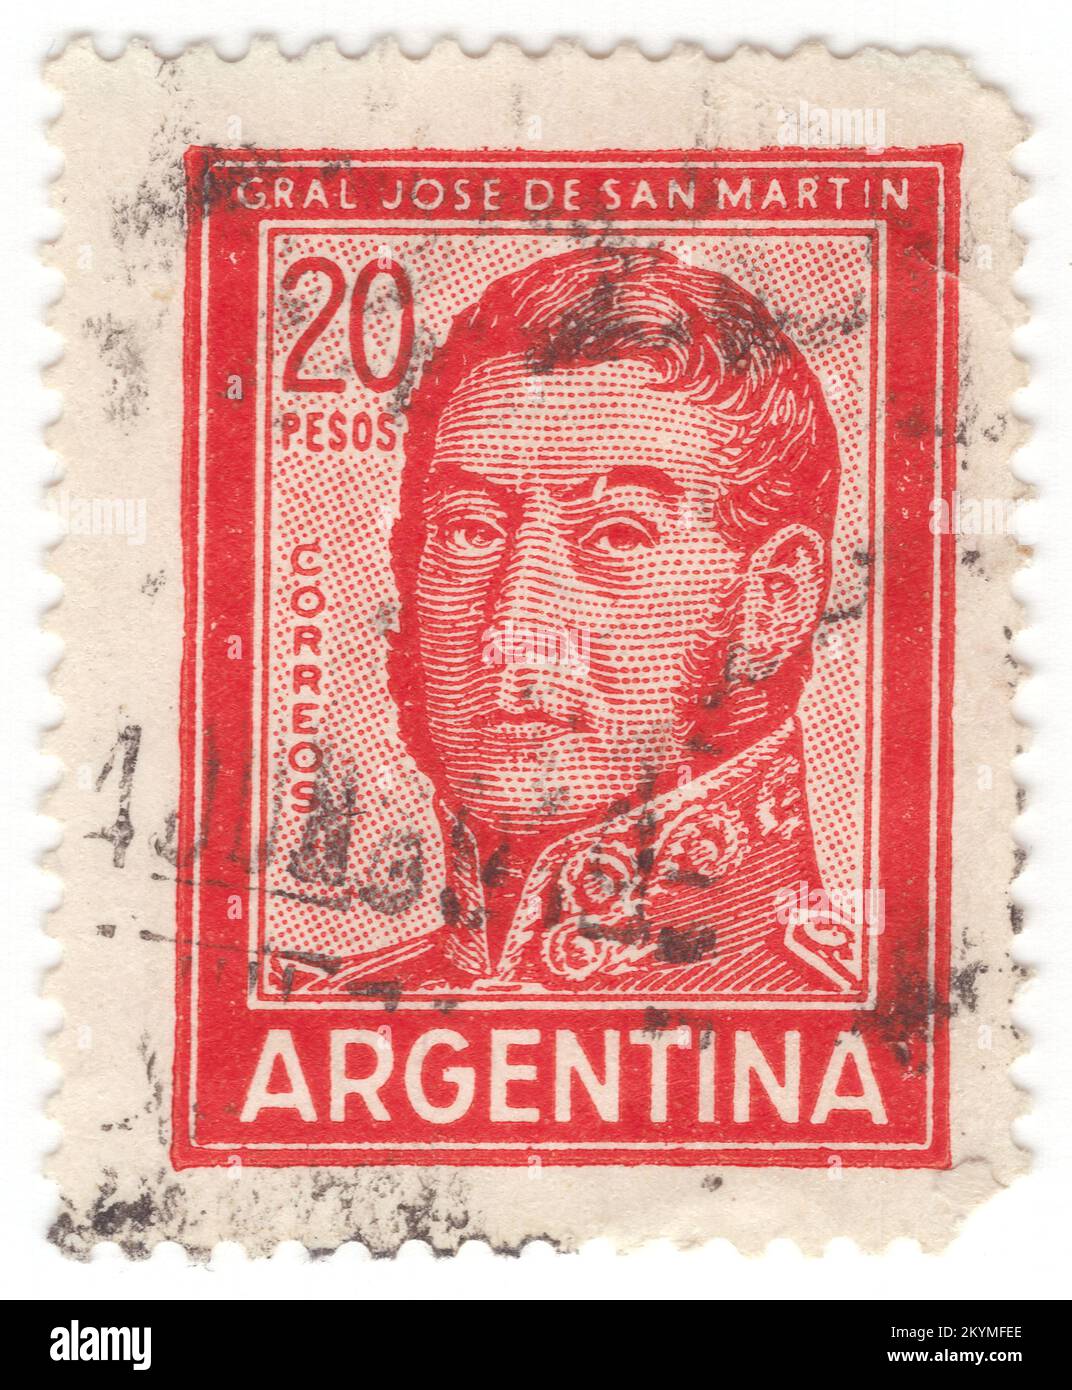 ARGENTINIEN - 1967: Rote Briefmarke mit 20 Pesos für das Porträt von José de San Martín (Jose Francisco de San Martín y Matorras), bekannt als der Liberator von Argentinien, Chile und Peru. Argentinischer General und der Hauptführer des südlichen und zentralen Teils des erfolgreichen Kampfes Südamerikas für die Unabhängigkeit vom Spanischen Reich, der als Beschützer von Peru diente. Geboren in Yapeyú, Corrientes, im modernen Argentinien, verließ er im frühen Alter von sieben Jahren das Vizekanzler der Río de la Plata, um in Málaga, Spanien, zu studieren Stockfoto